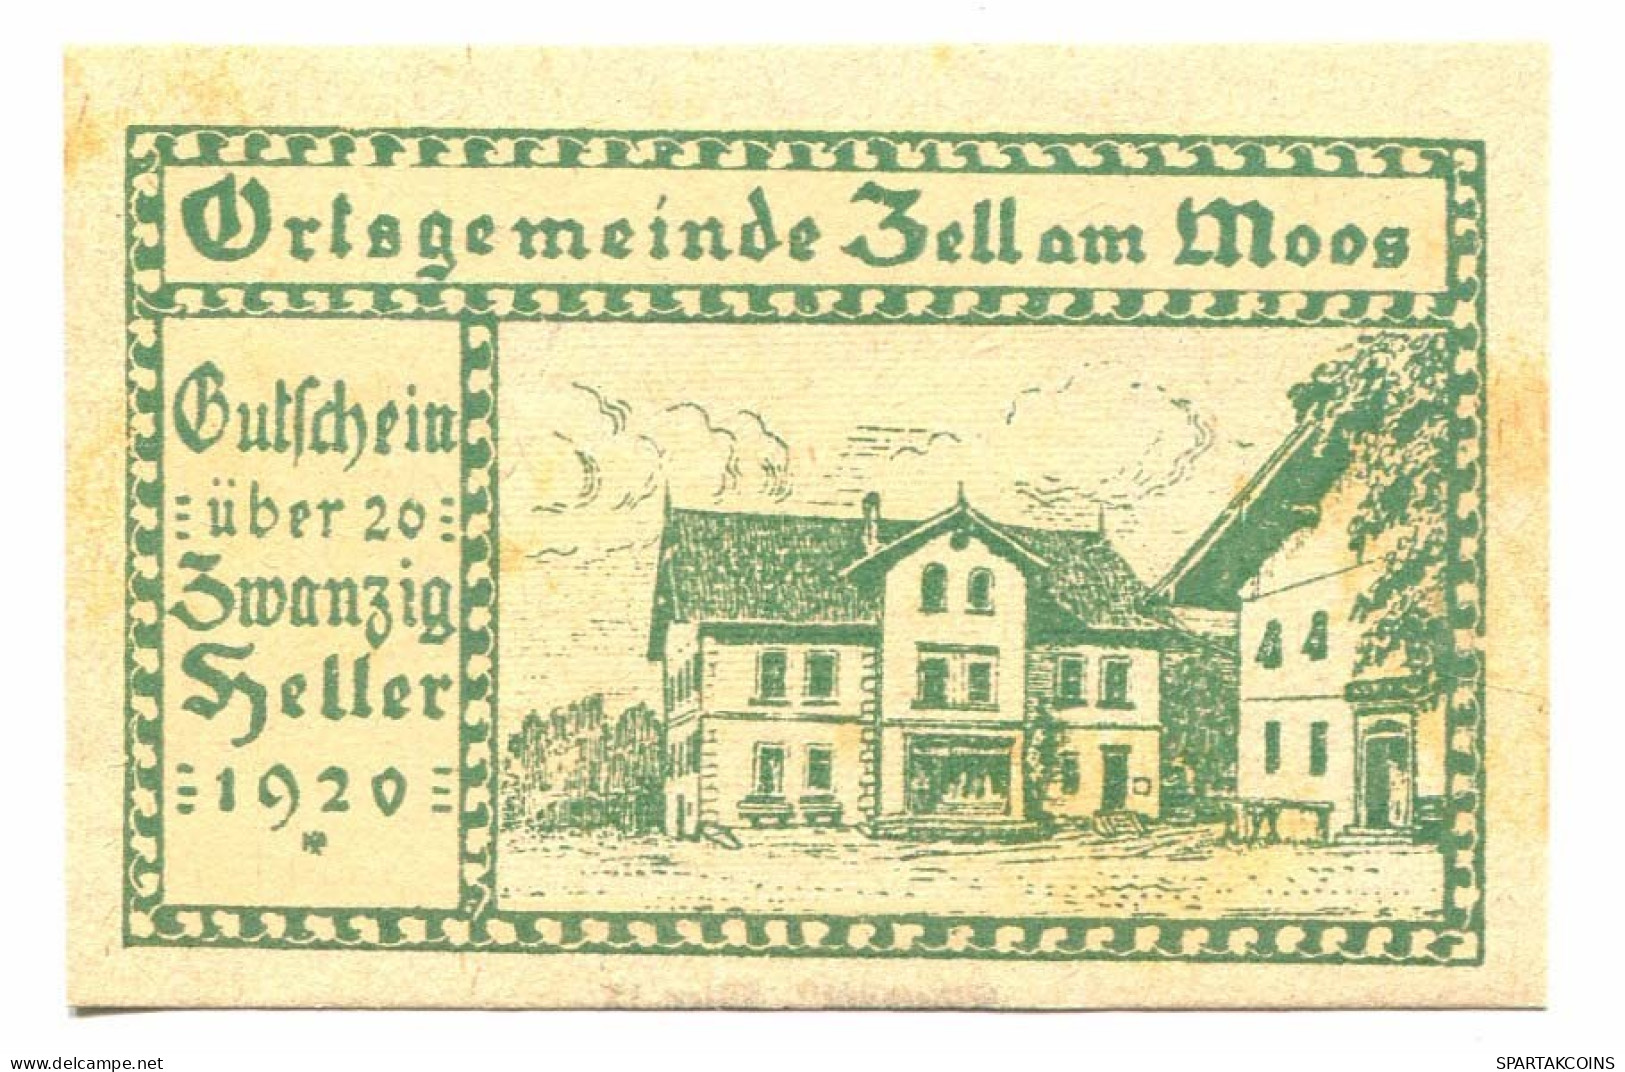 20 Heller 1920 ZELL AM MOOS Österreich UNC Notgeld Papiergeld Banknote #P10504 - [11] Emisiones Locales